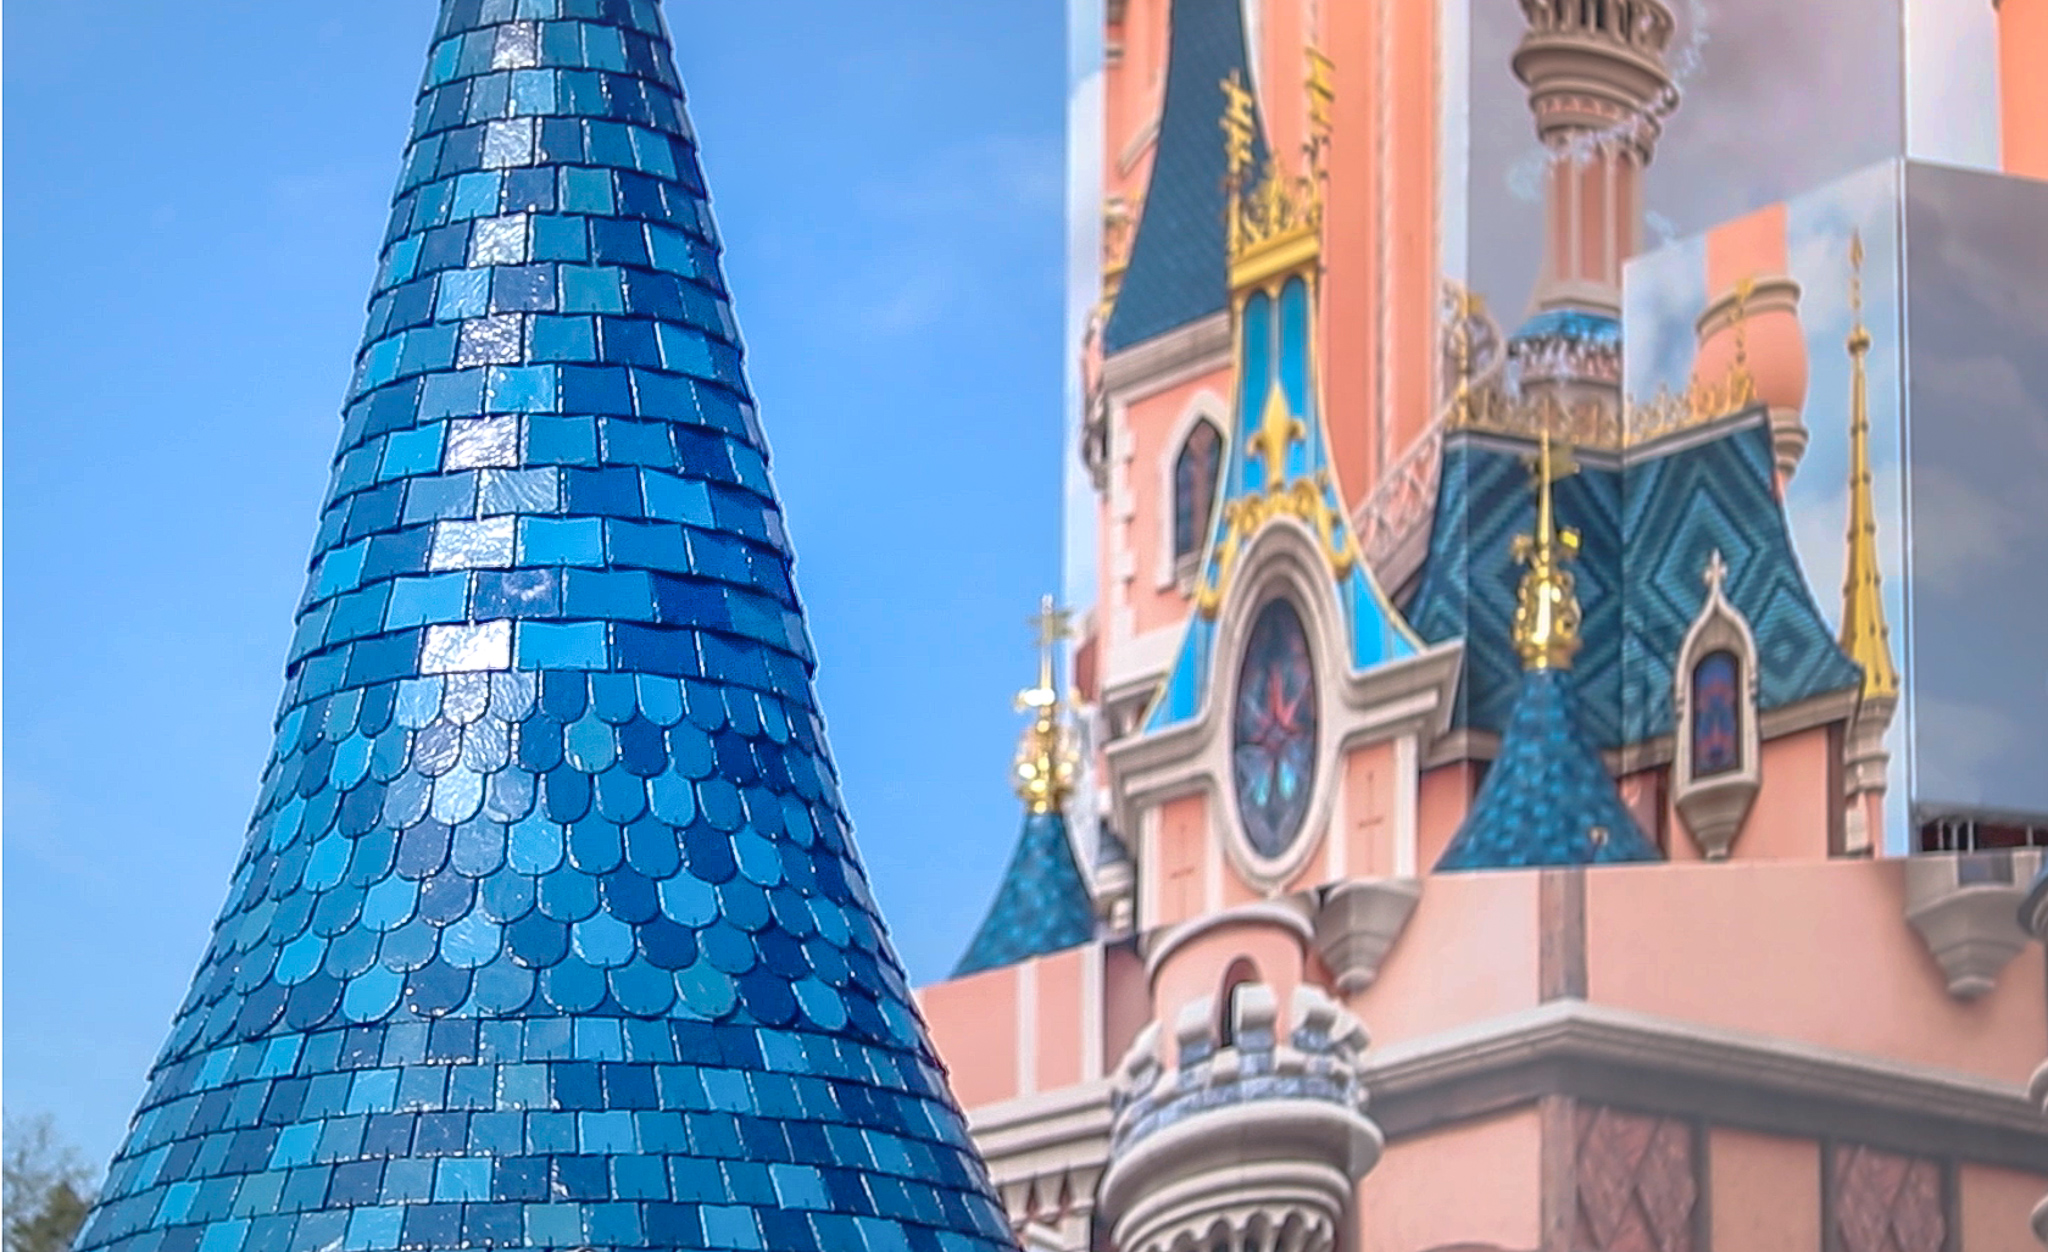 #partofmyCASTle — Ca y est, les messages des Cast Members de Disneyland Paris sont dans une des tours du Château